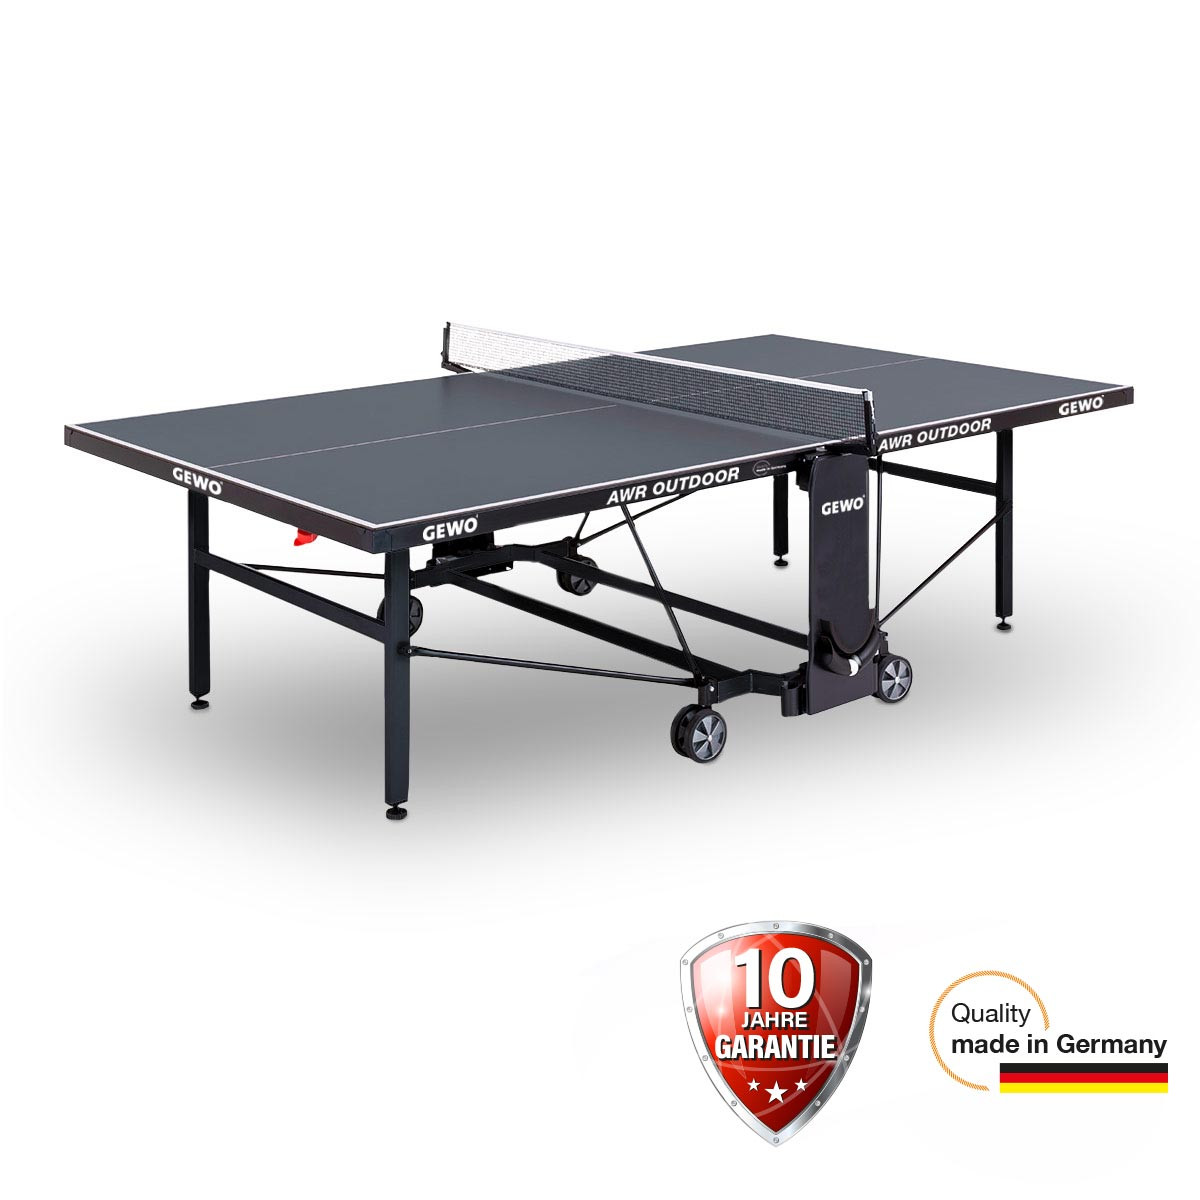 GEWO AWR Outdoor-Tischtennisplatte online kaufen CONTRA Tischtennis Zentrum Berlin